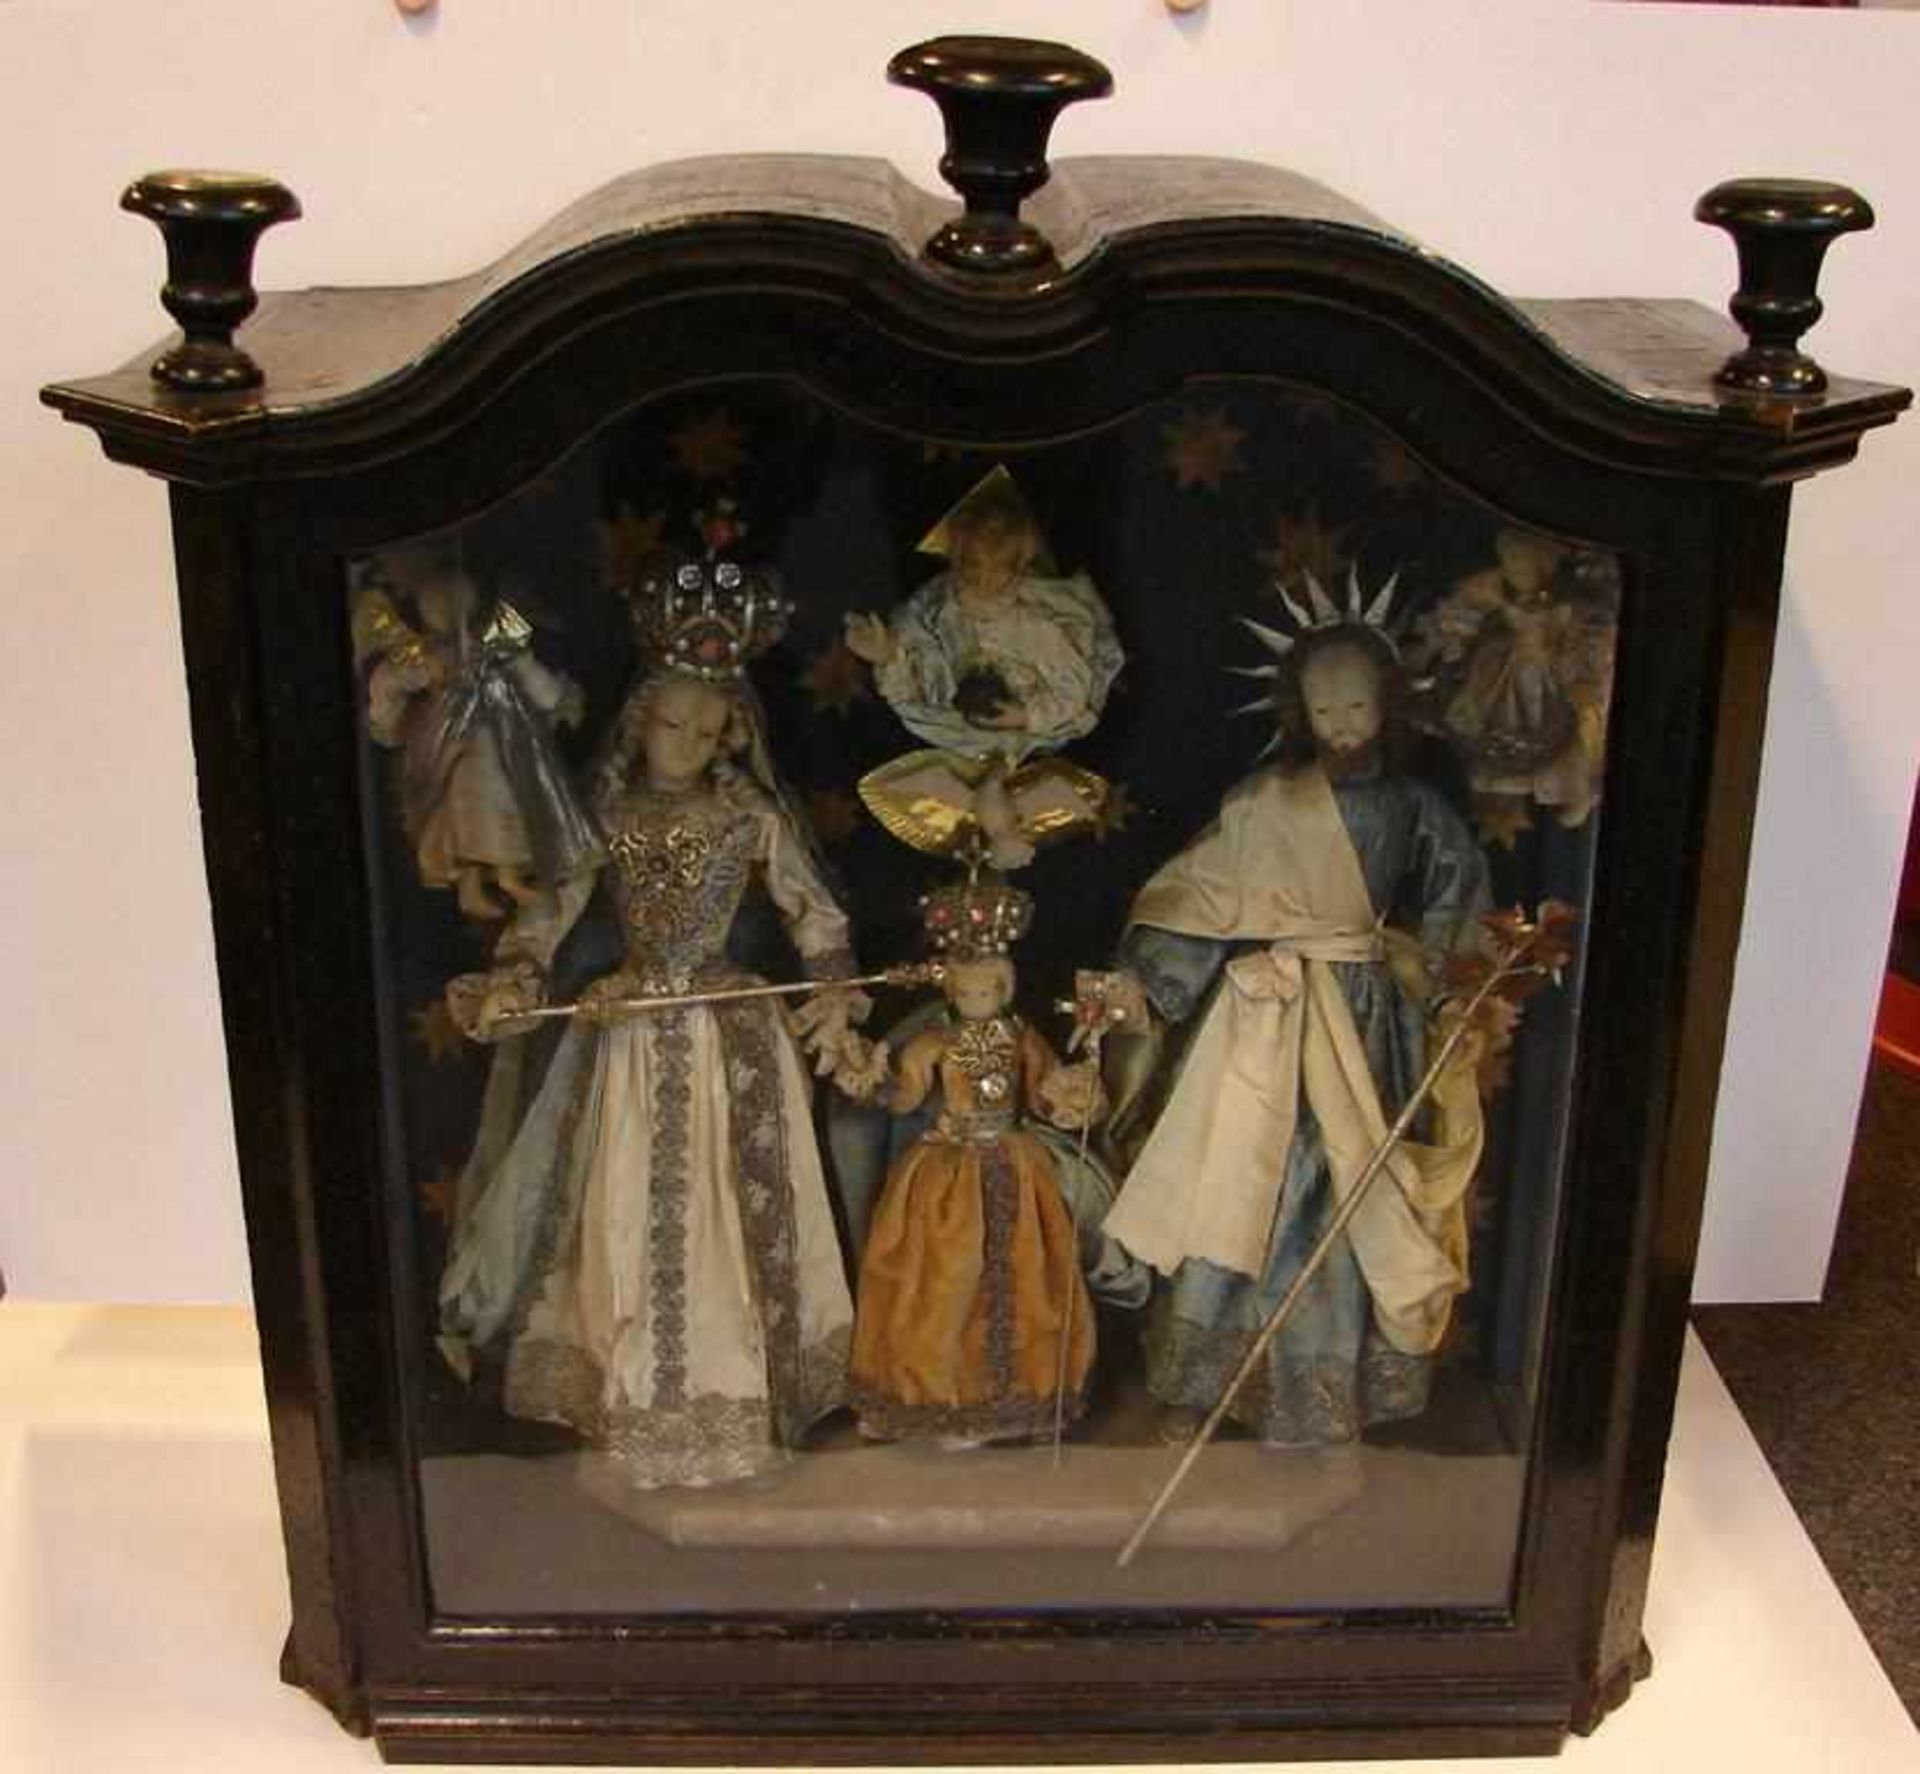 Klosterarbeit, Heilige Familie, Wachsfiguren, wohl Holland, 19. Jhd.,im Holz/Glaskasten, ca. 67 x 70